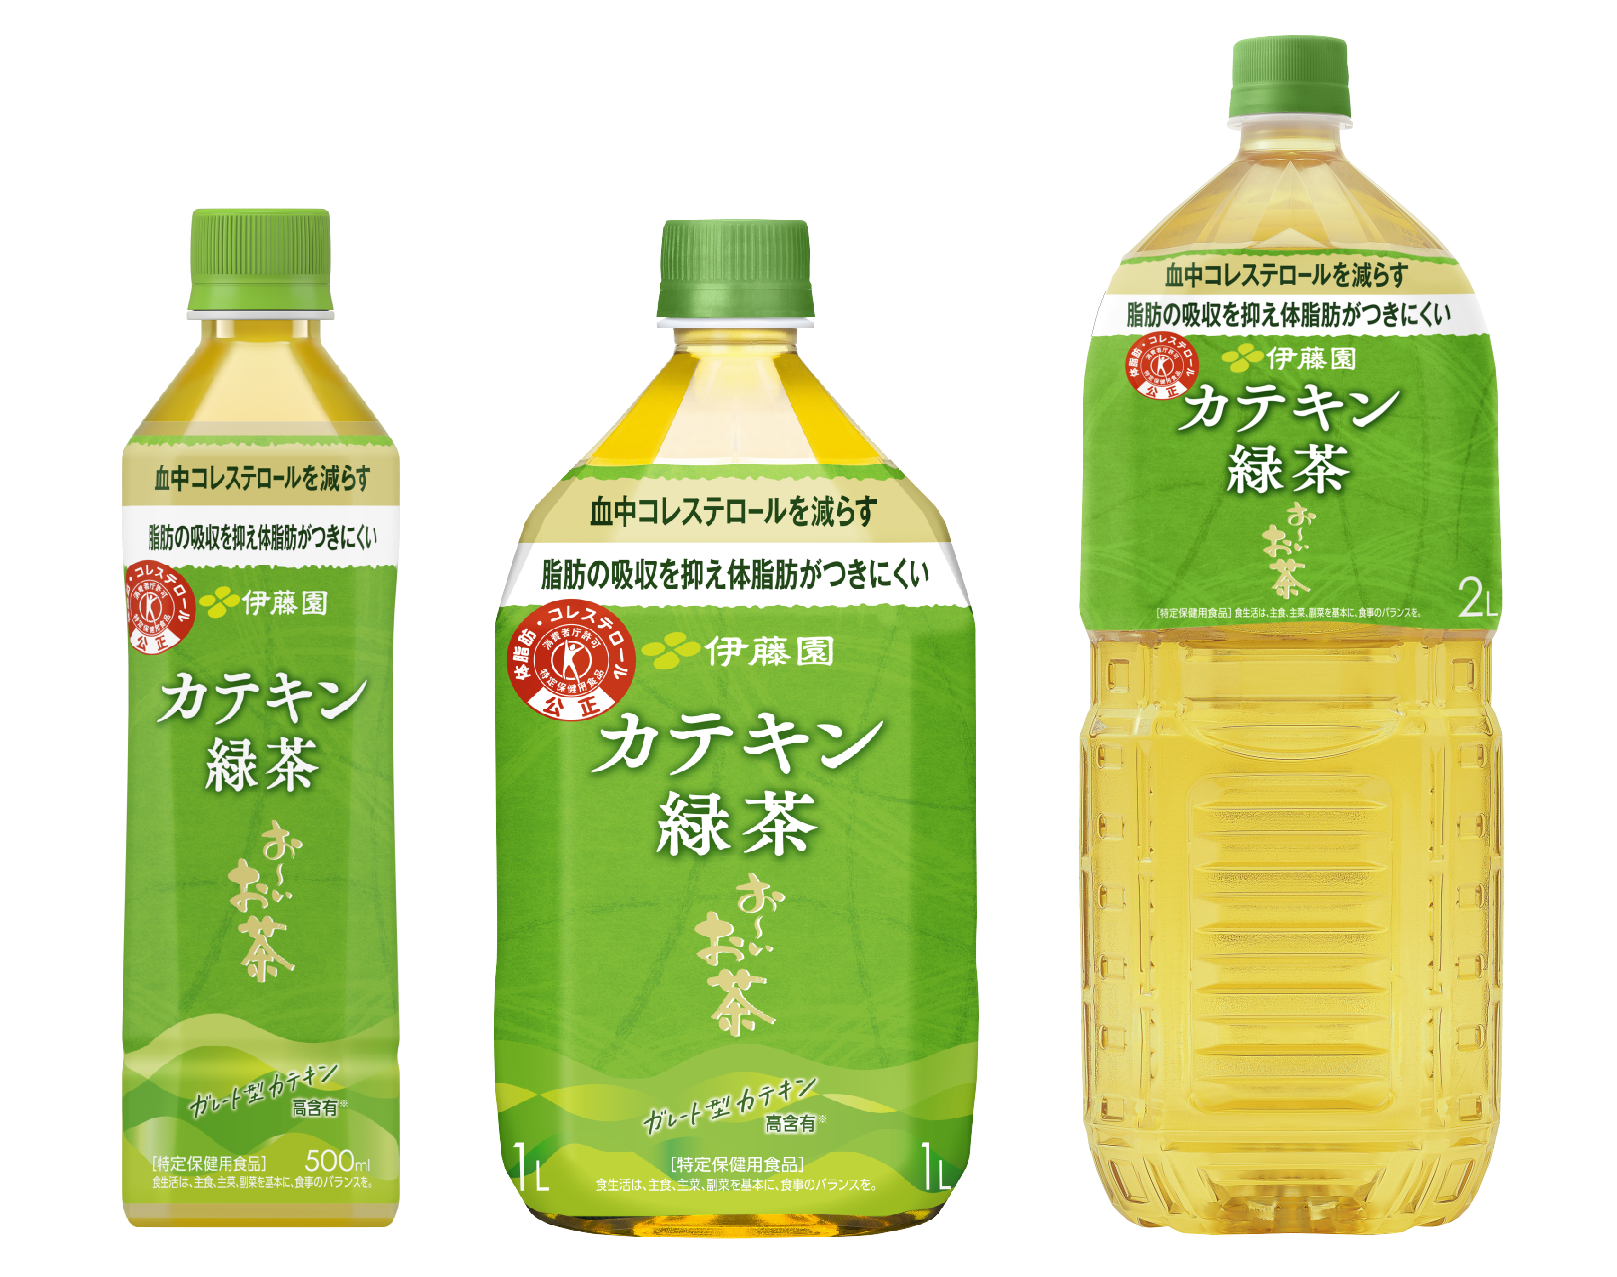  伊藤園 緑茶習慣 24本 特定保健用食品 トクホ